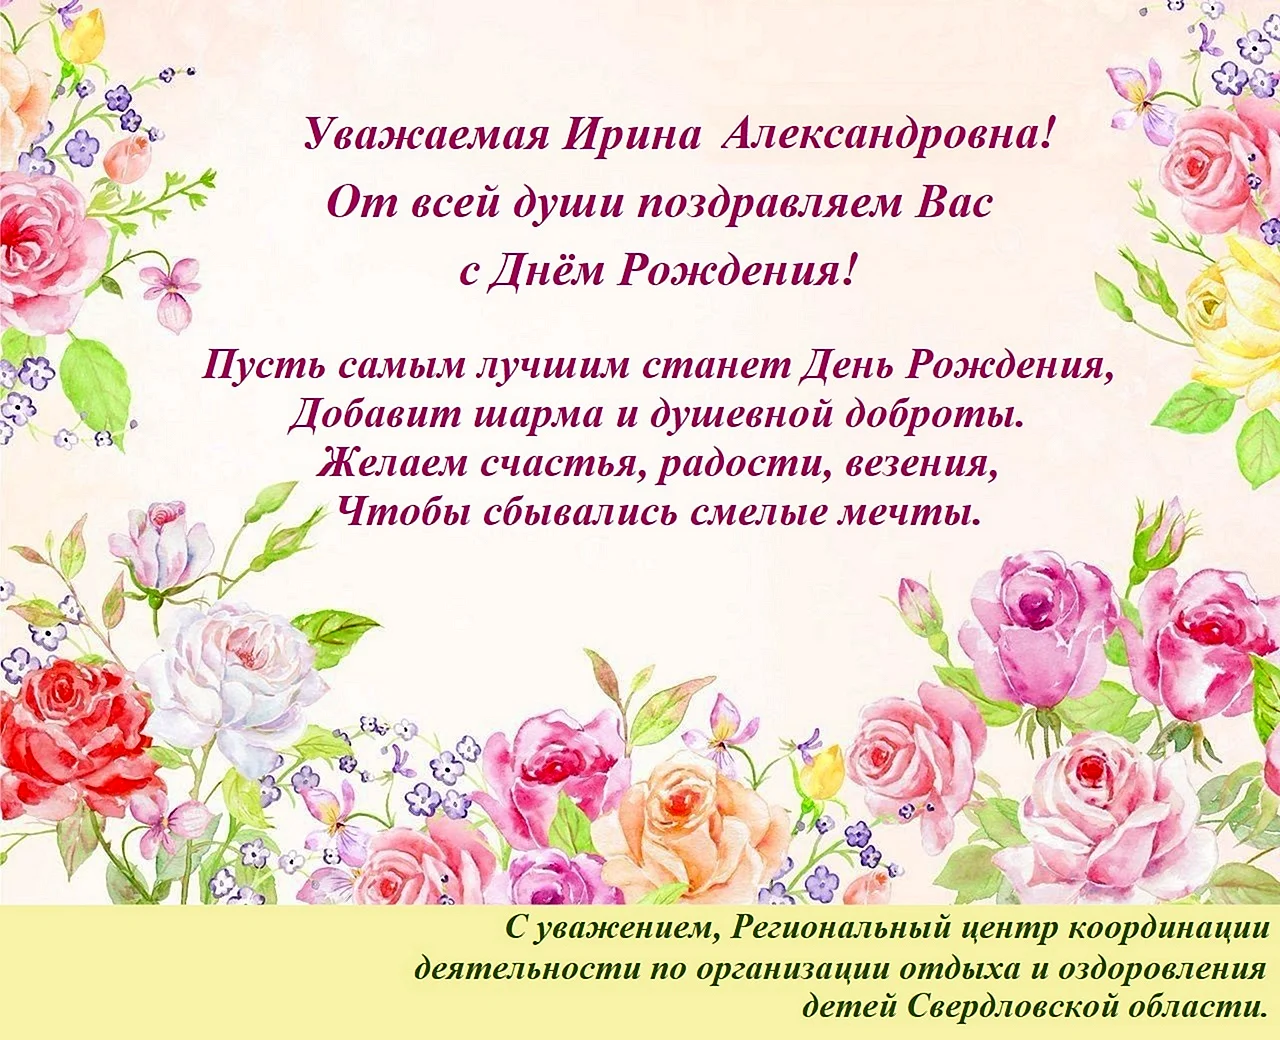 Поздравления с днем рождения Ирине Александровне